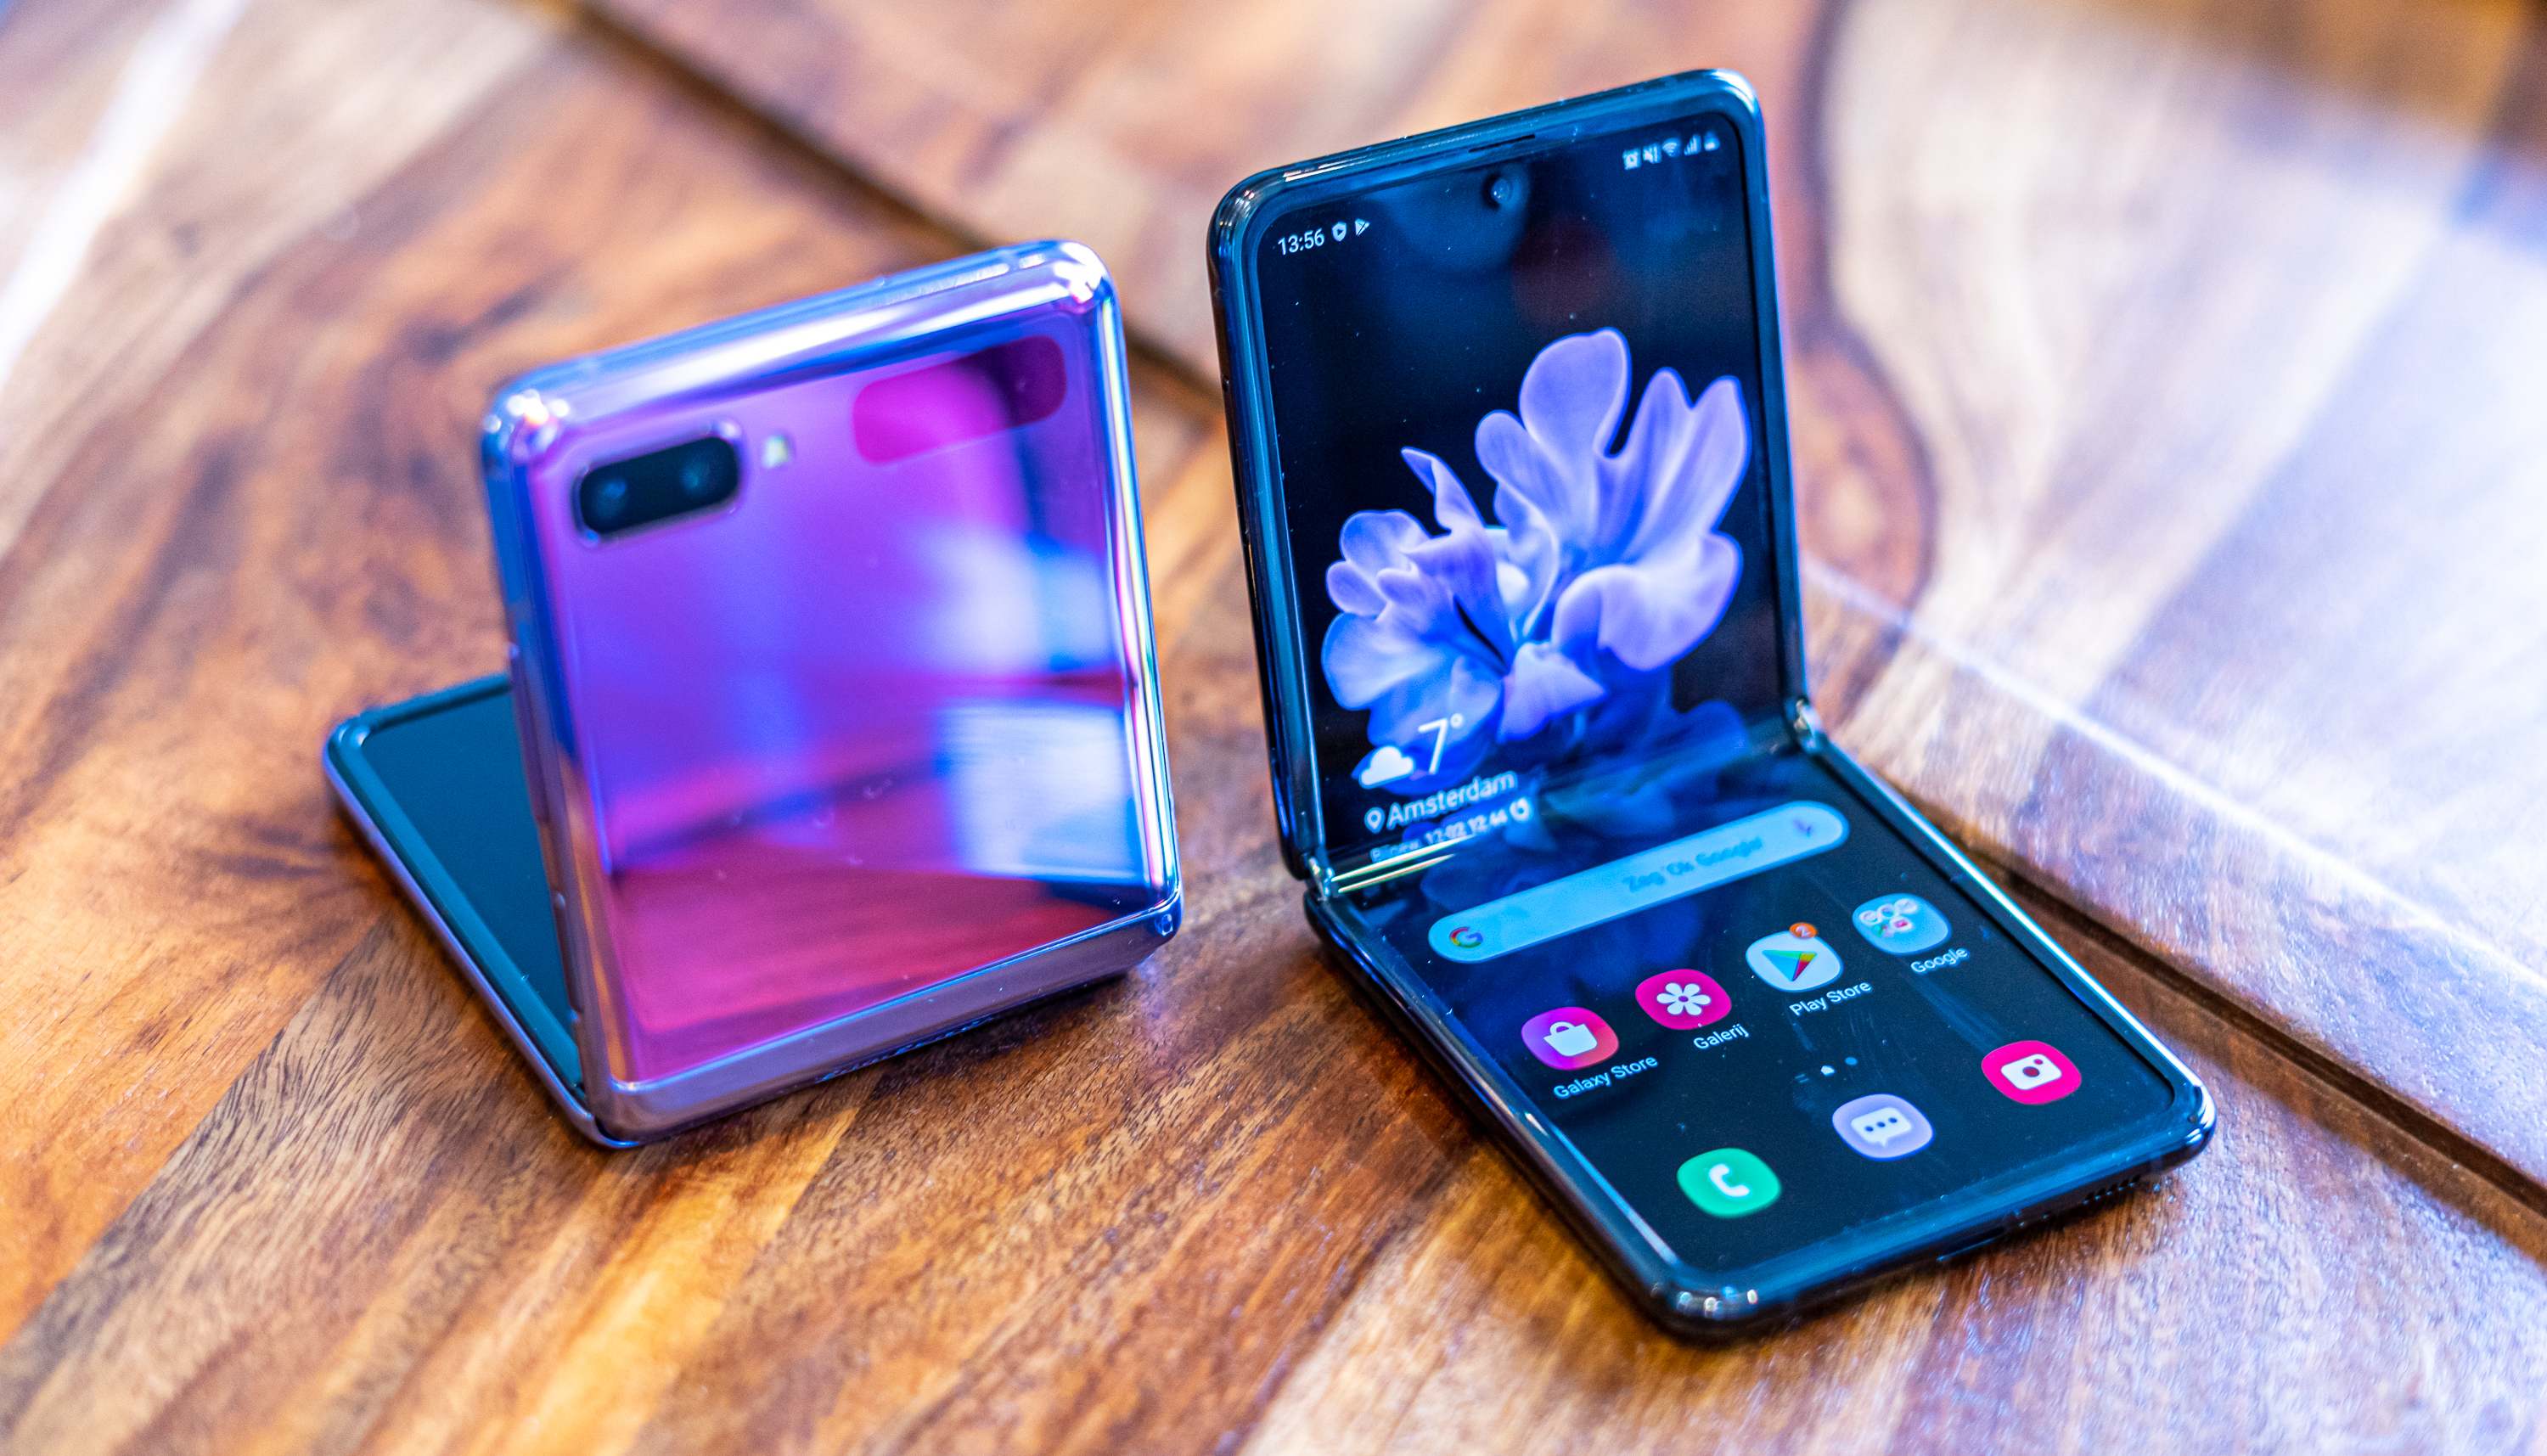 versterking Verplaatsing hetzelfde Samsung brengt mogelijk nog een Galaxy Z Flip uit in 2020